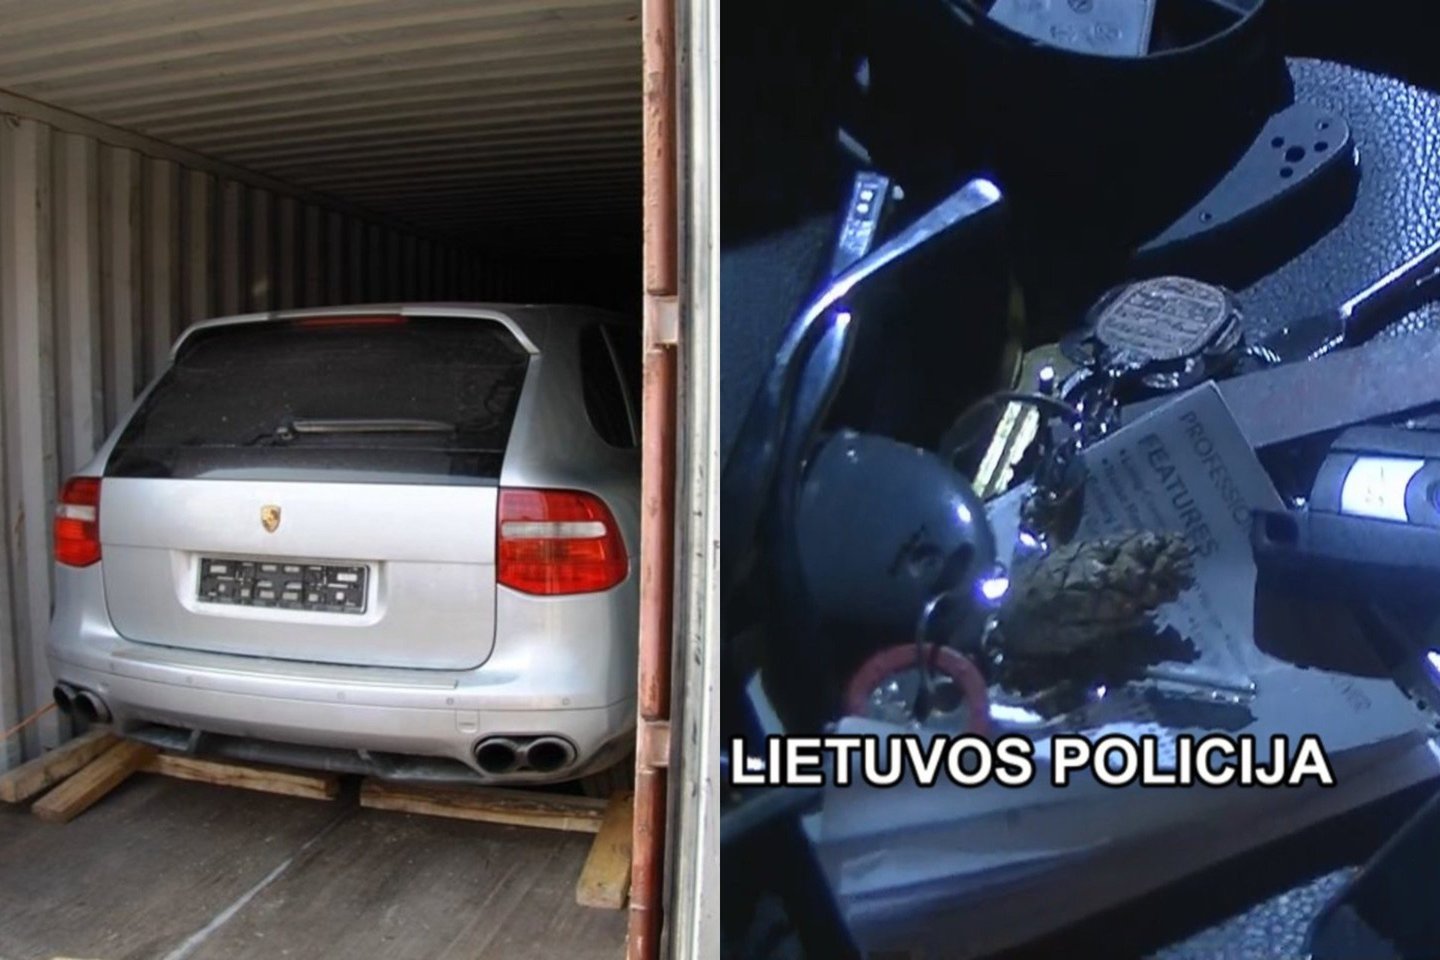 Verslininkas pelnėsi pardavinėdamas iš JAV atgabentus automobilius.<br> Lietuvos policijos nuotr.